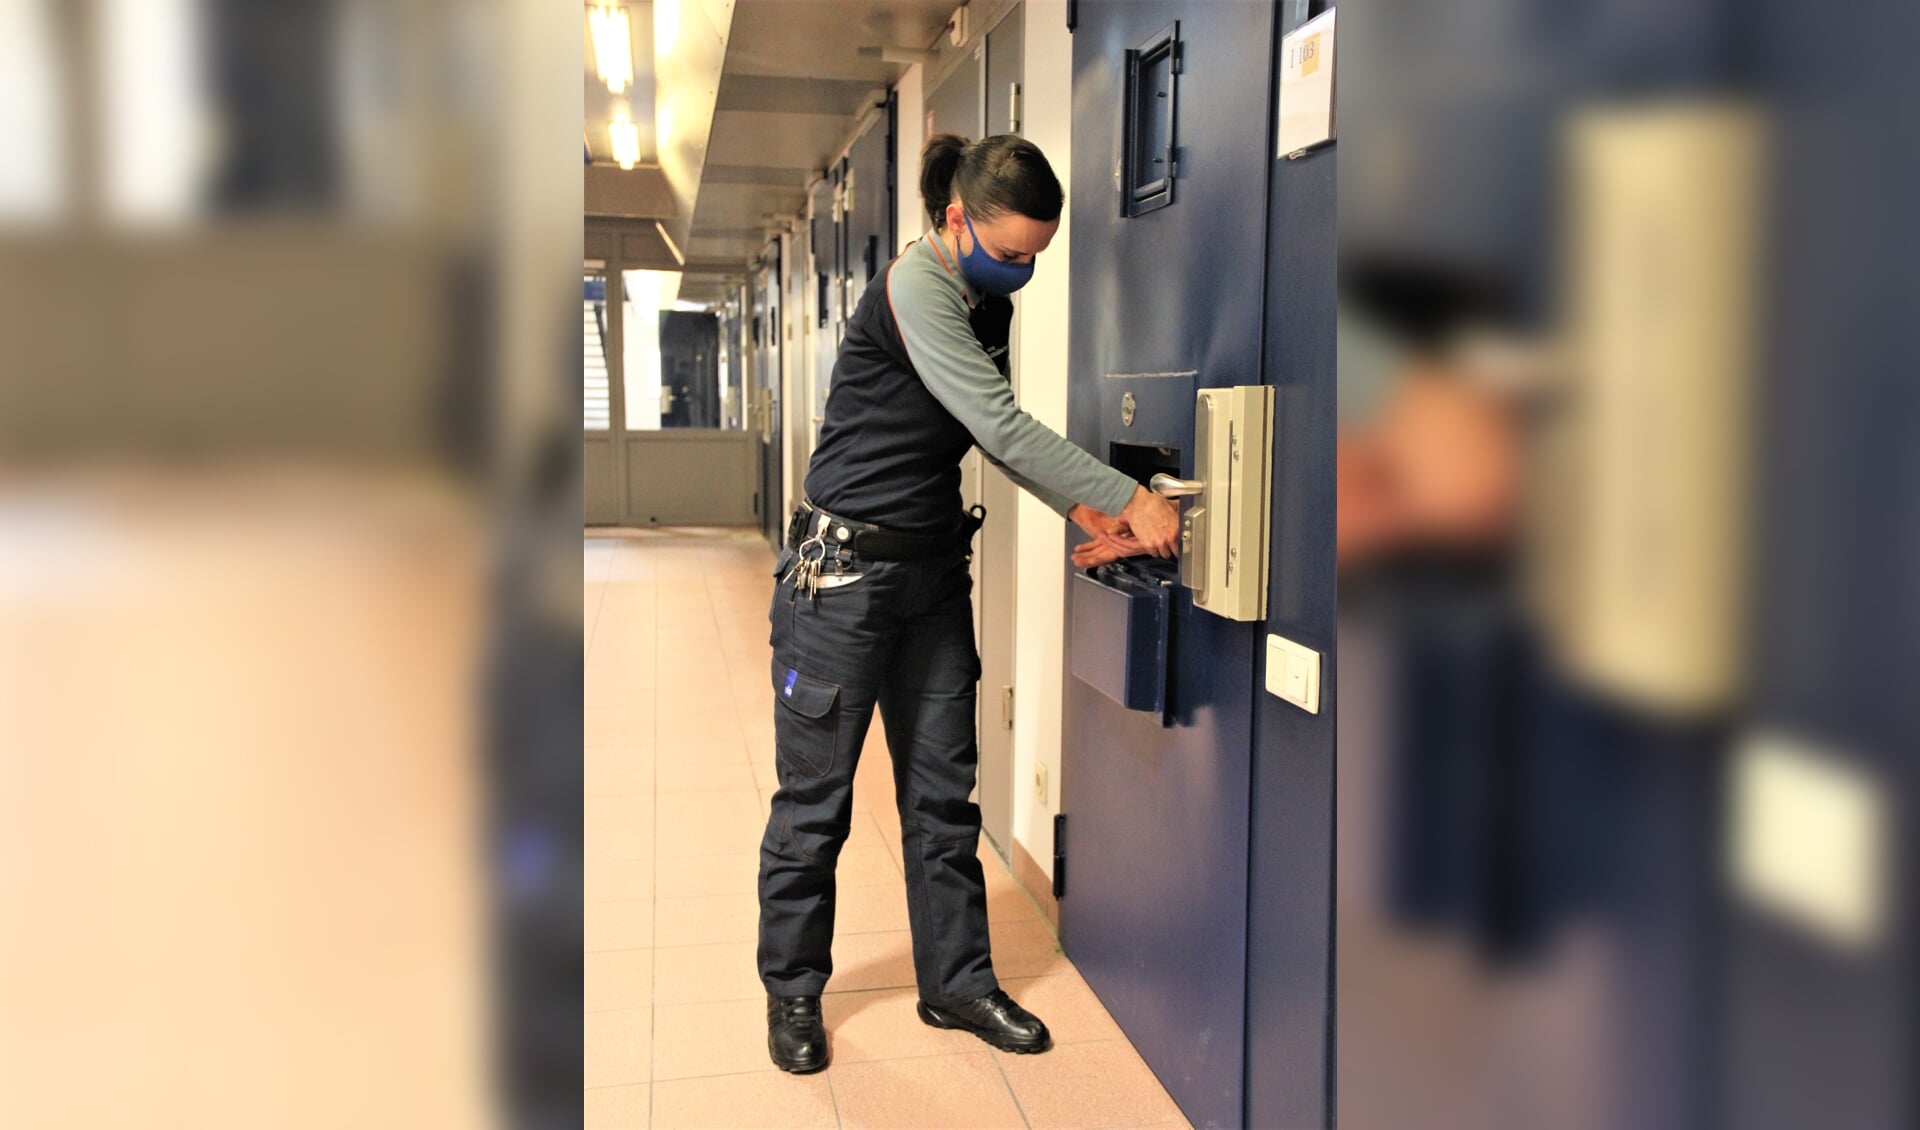 • De celdeuren op de AIT zijn voorzien van boeiluiken om gedetineerden 'gecontroleerd' uit hun cel te halen.